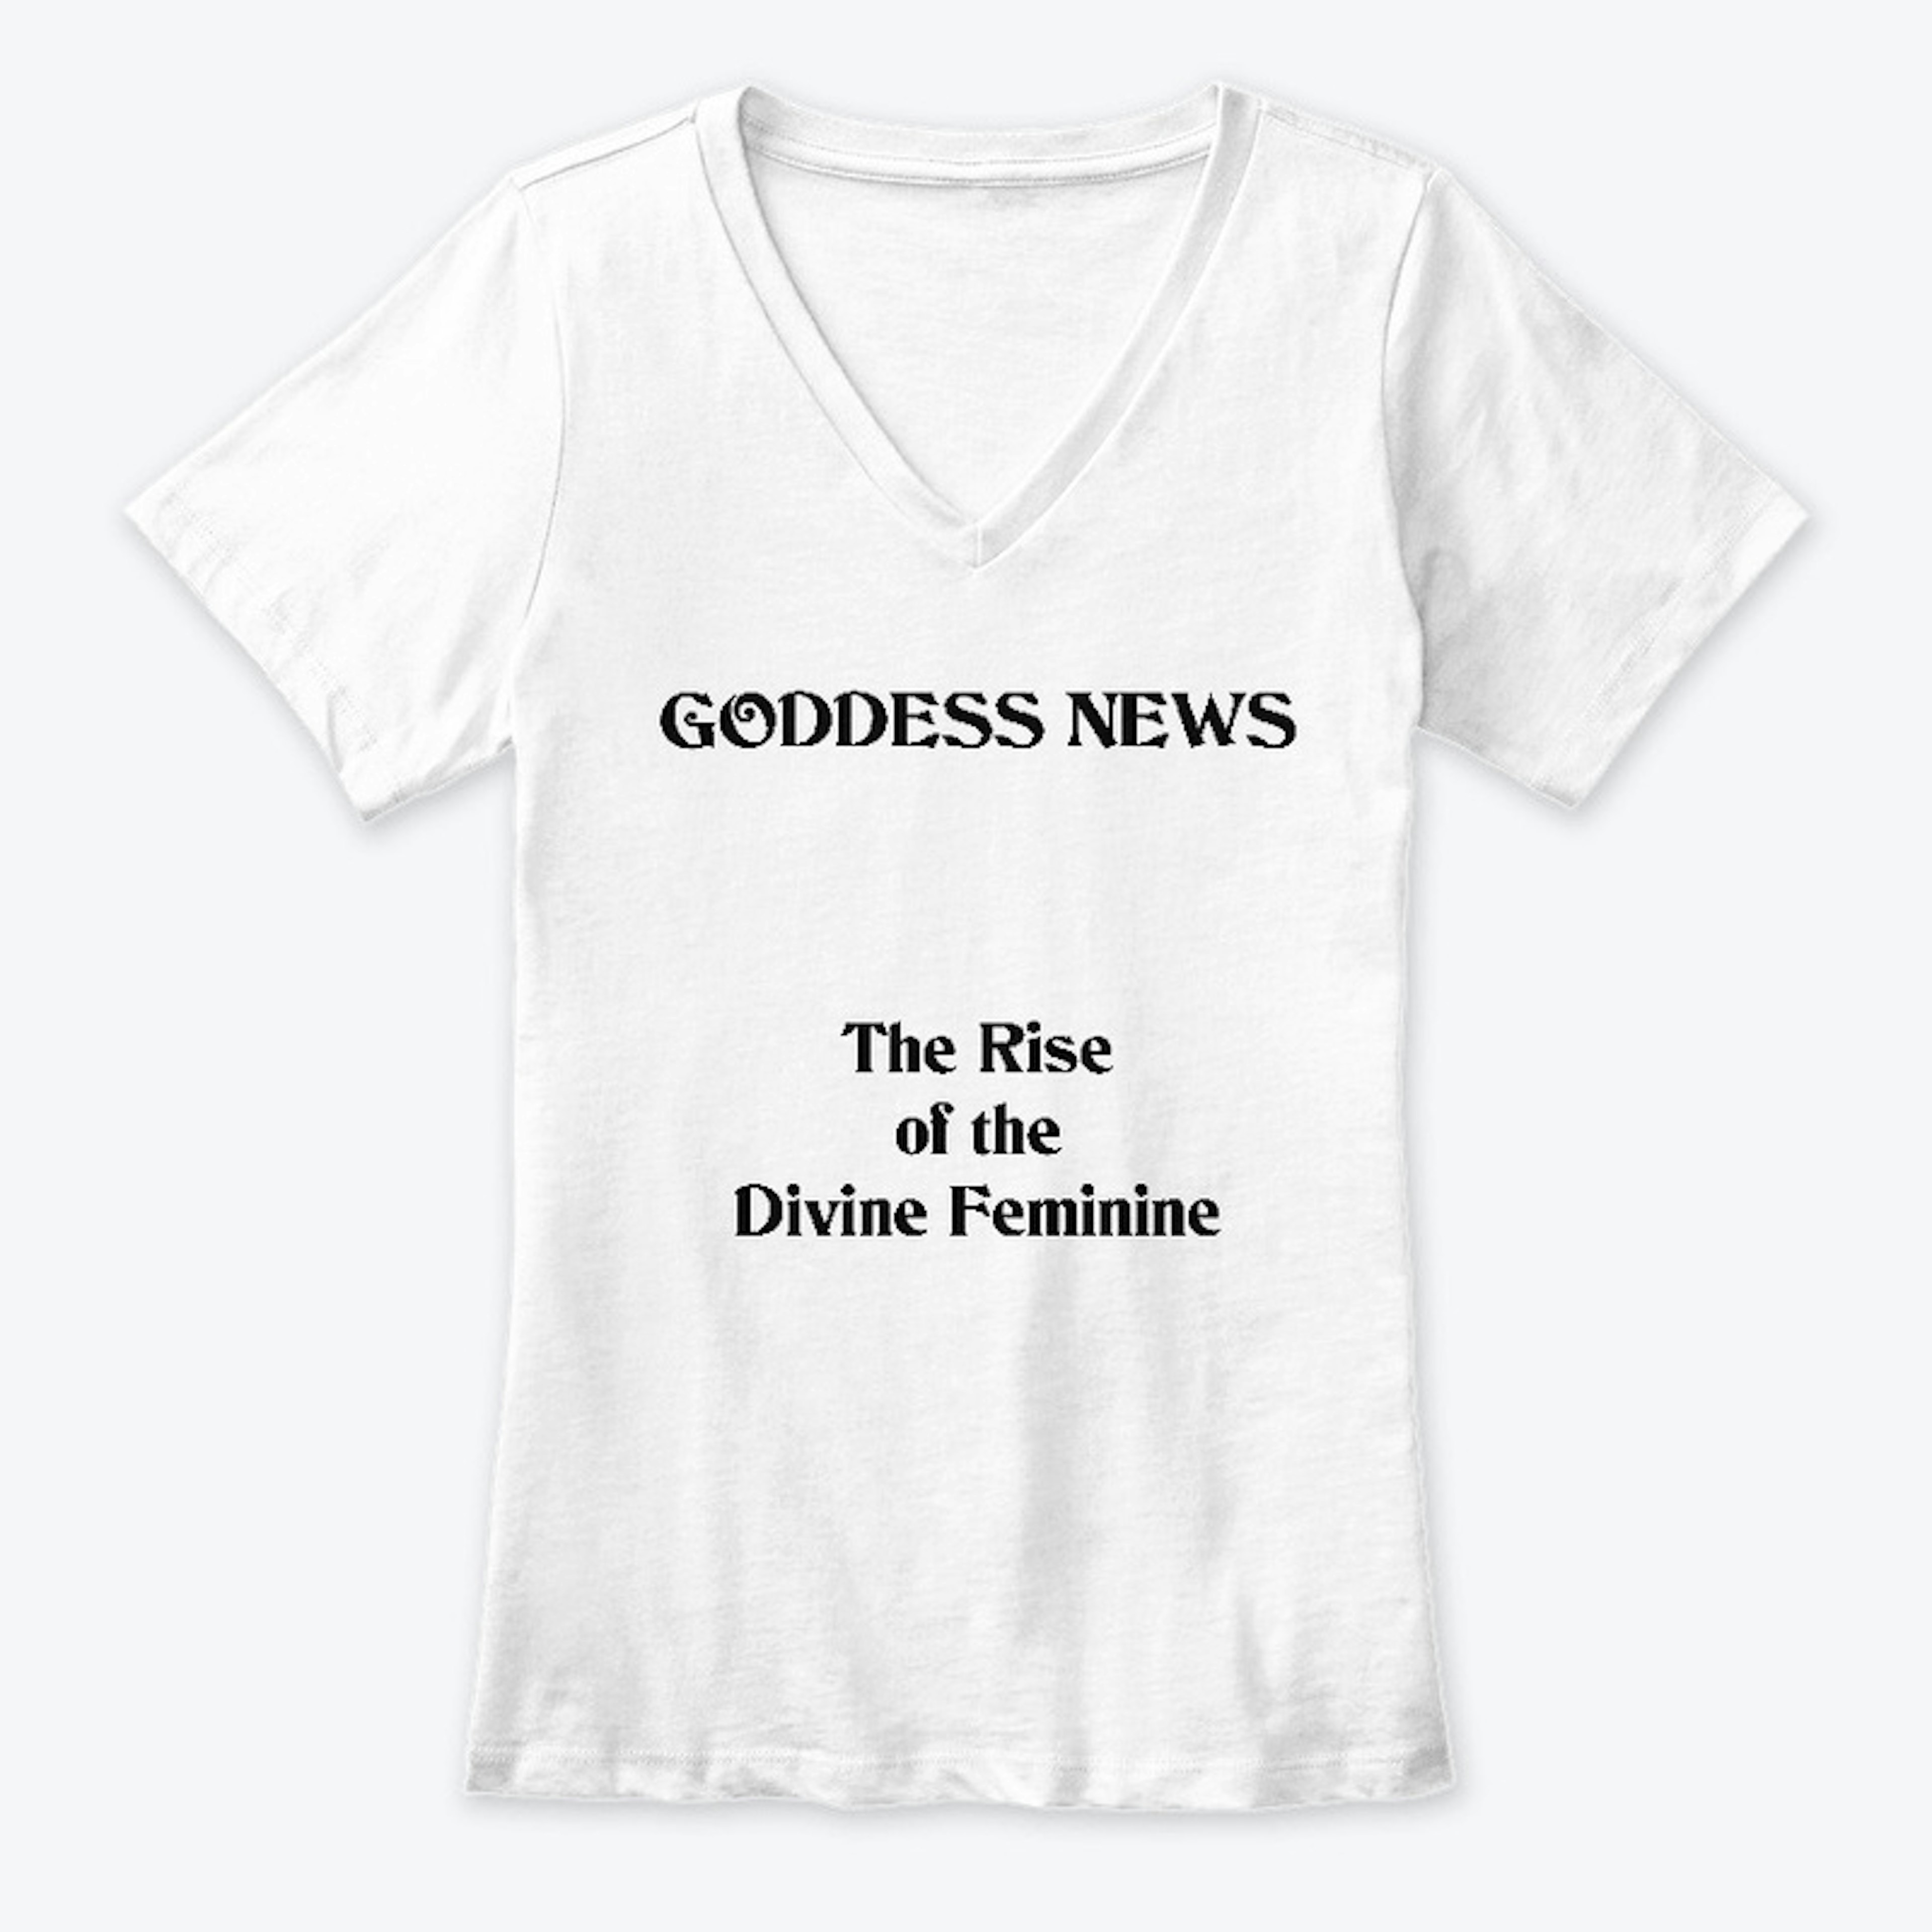 The Rise of the Divine Feminine